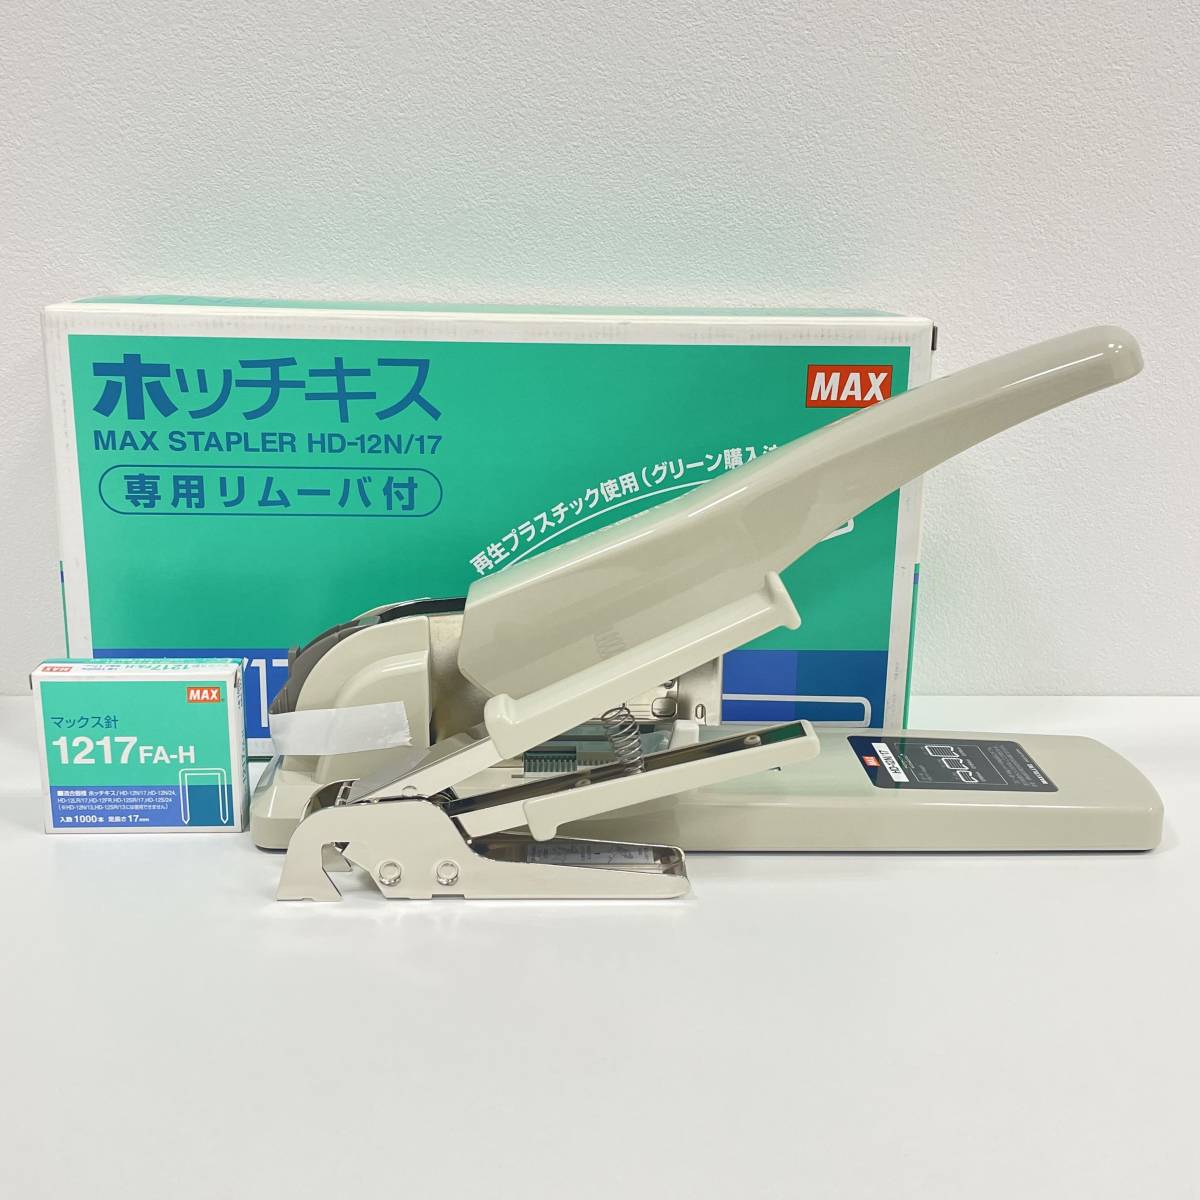 [MAX/ Max ] степлер HD-12N/17 специальный съемник есть серый для бизнеса [ коробка / Max игла есть 1217FA-H]*1723